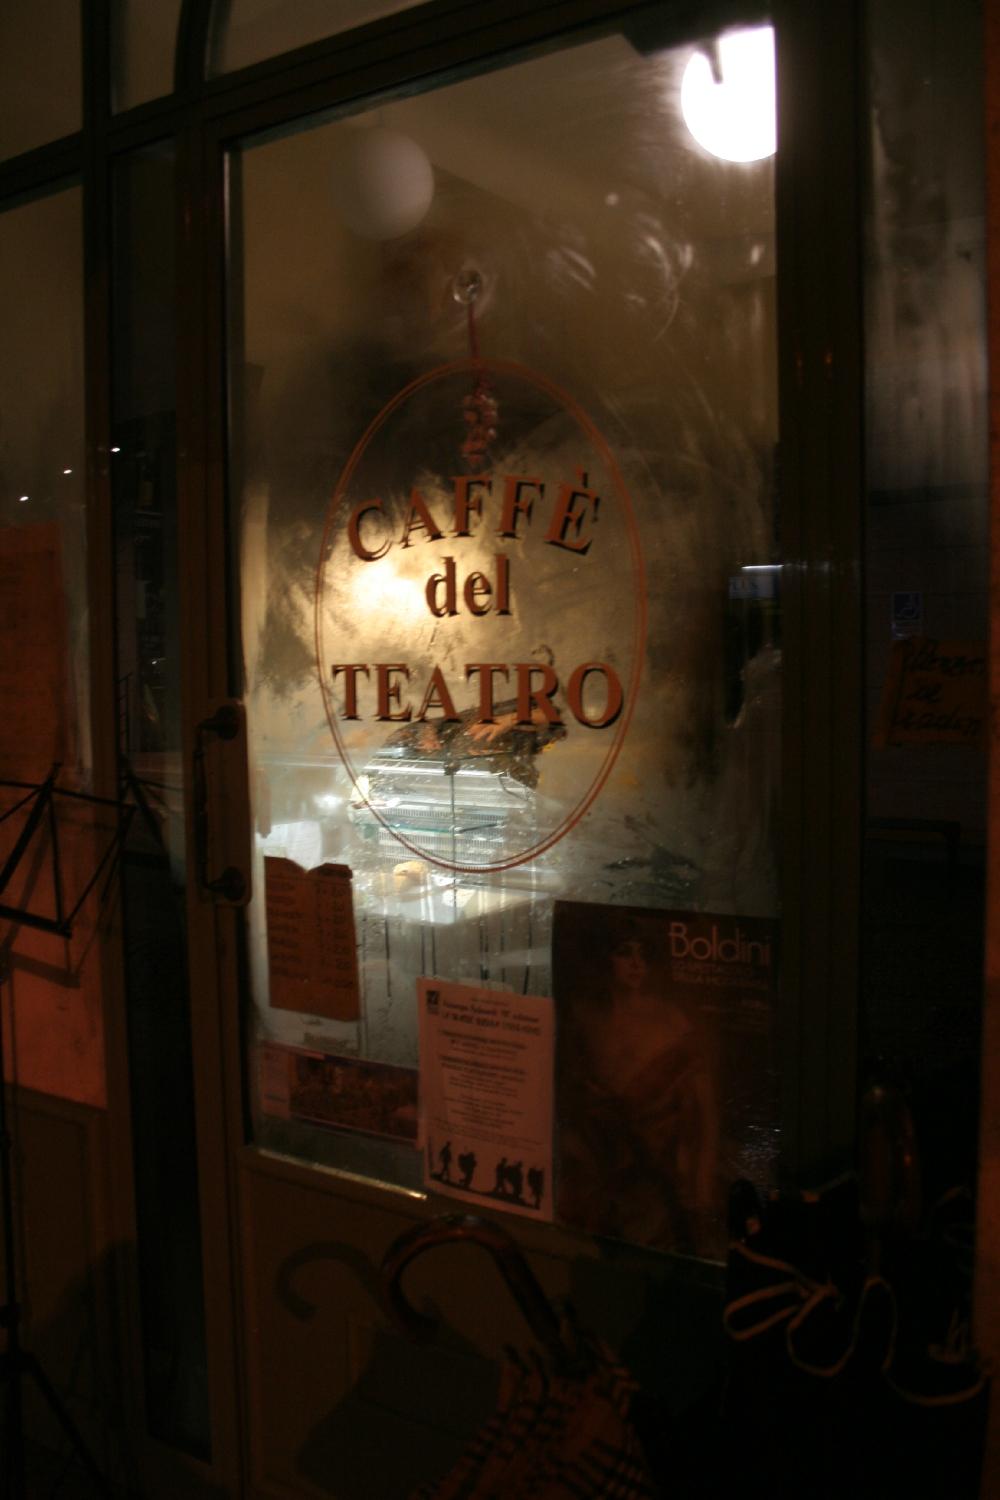 Caffe del teatro